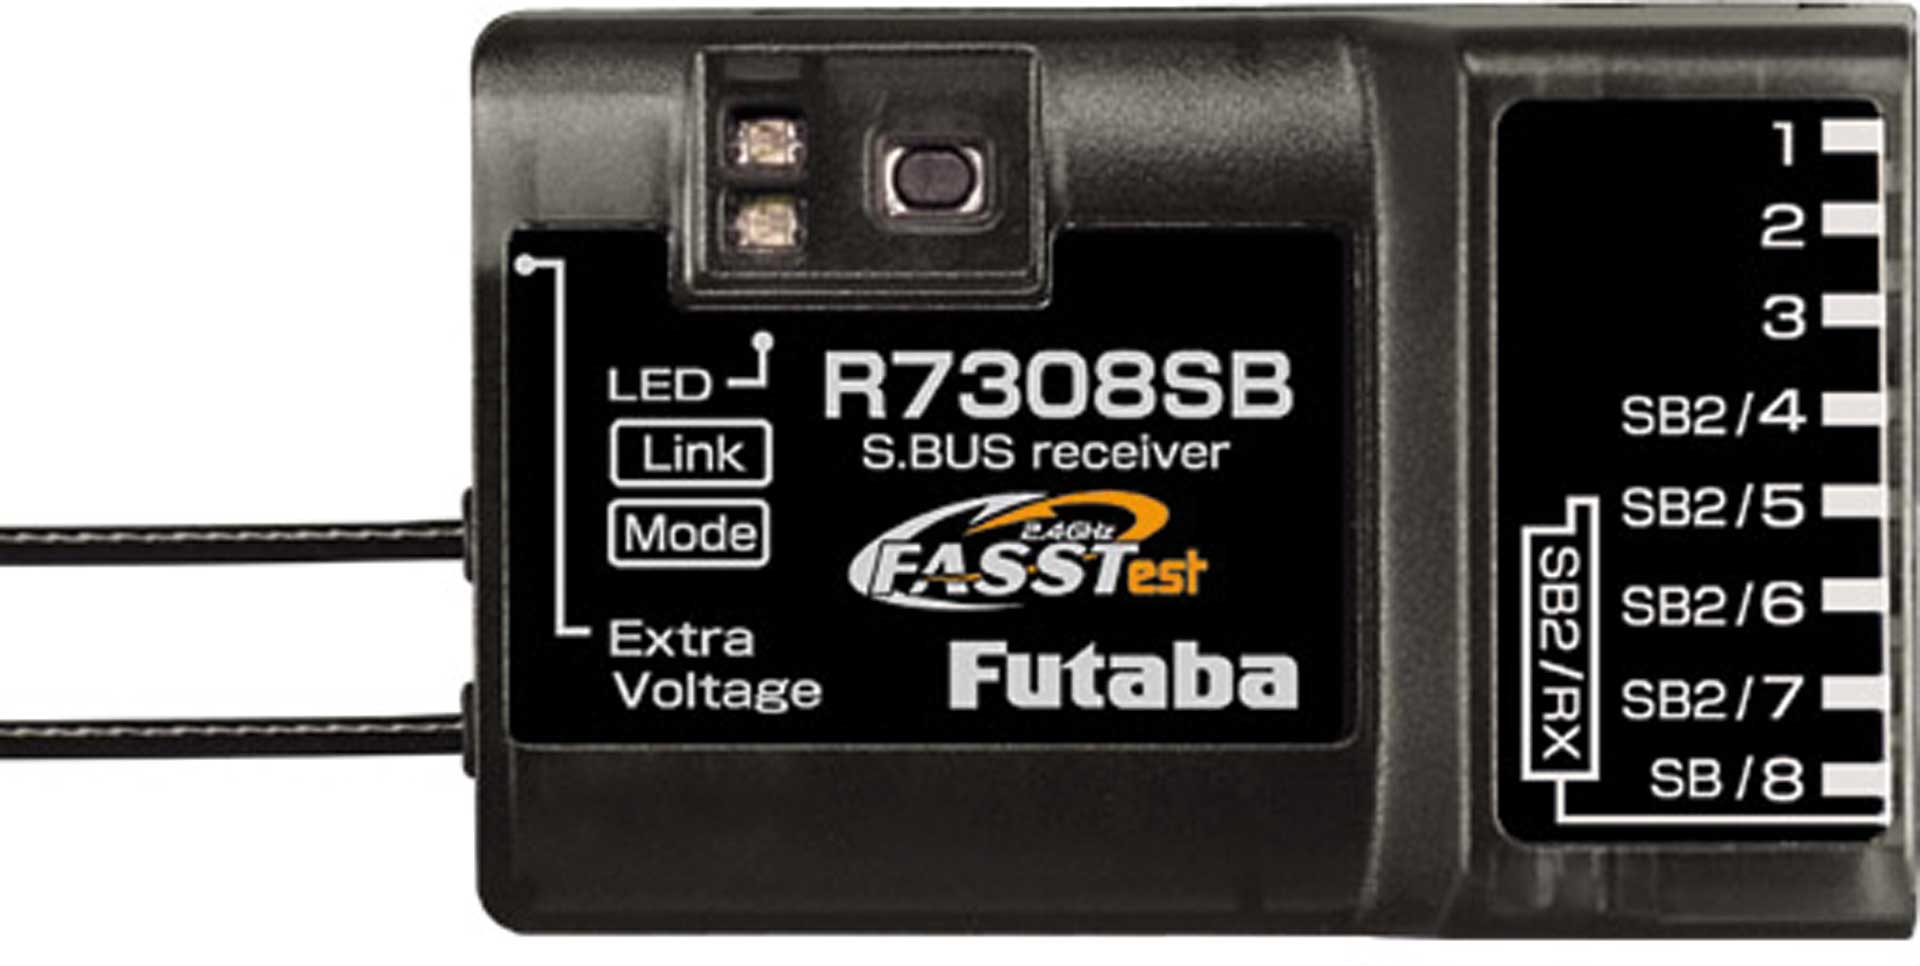 FUTABA R7308SB 8CH S.BUS2 FASSTest receiver